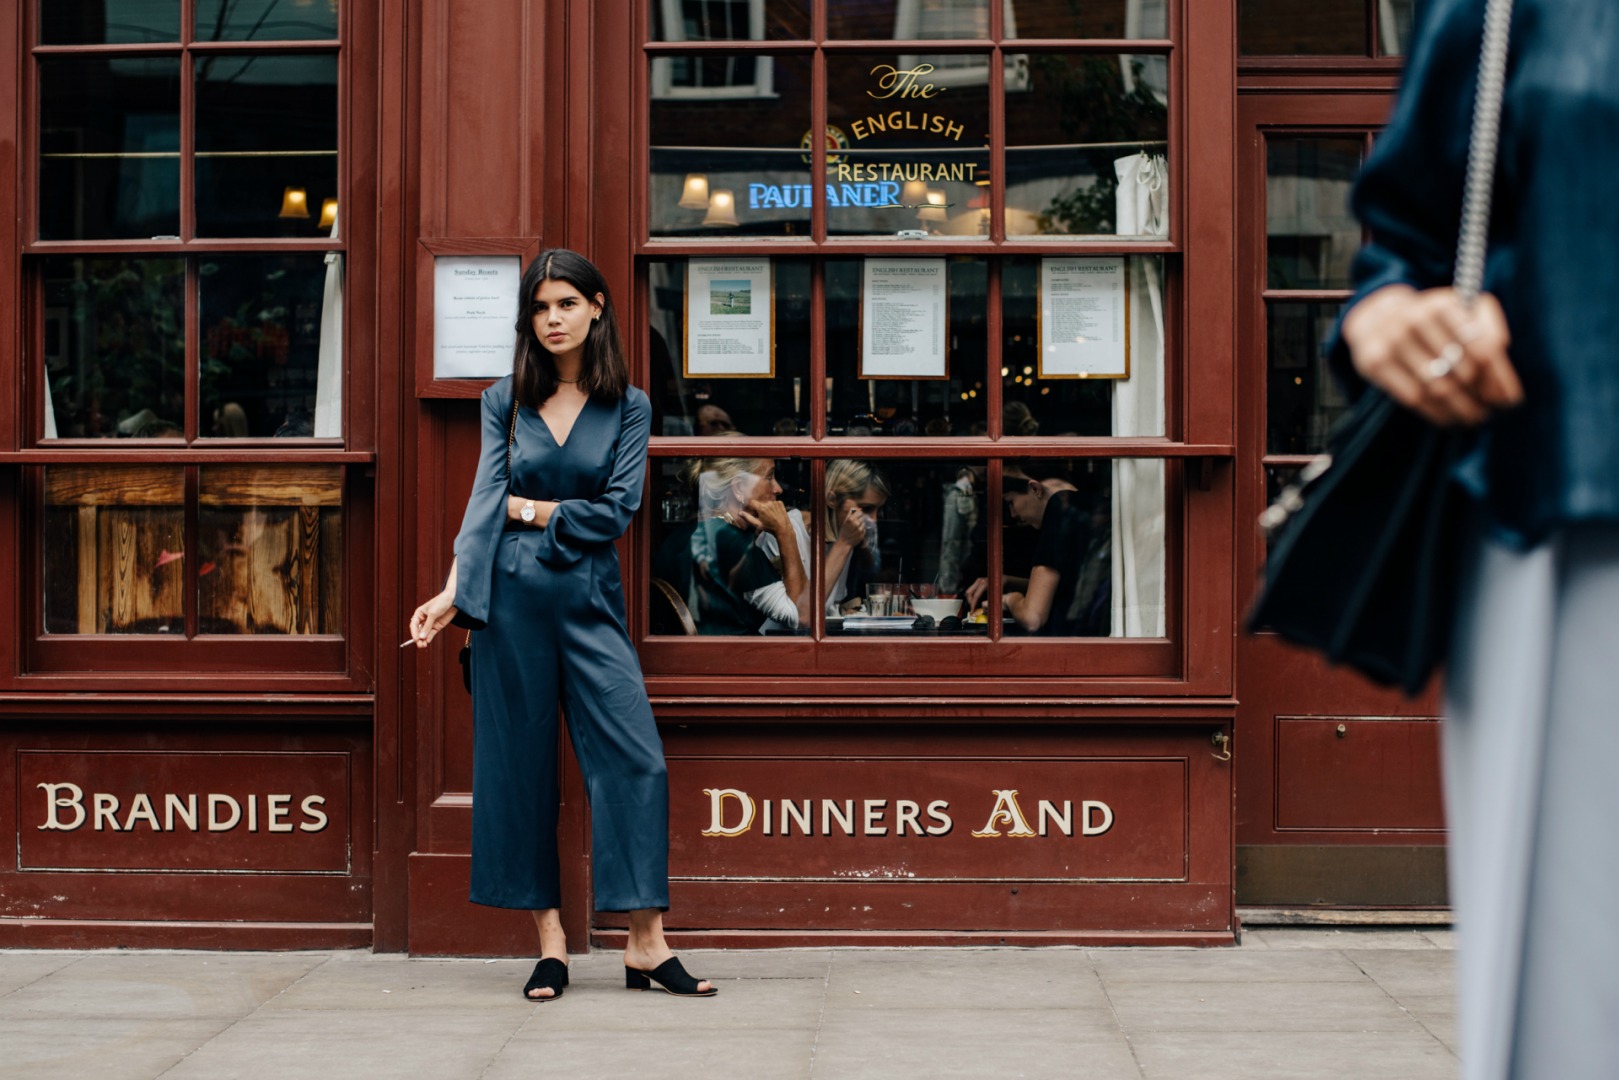 Sokak Stili: 2017 İlkbahar/Yaz Londra Moda Haftası 3. ve 4. Gün